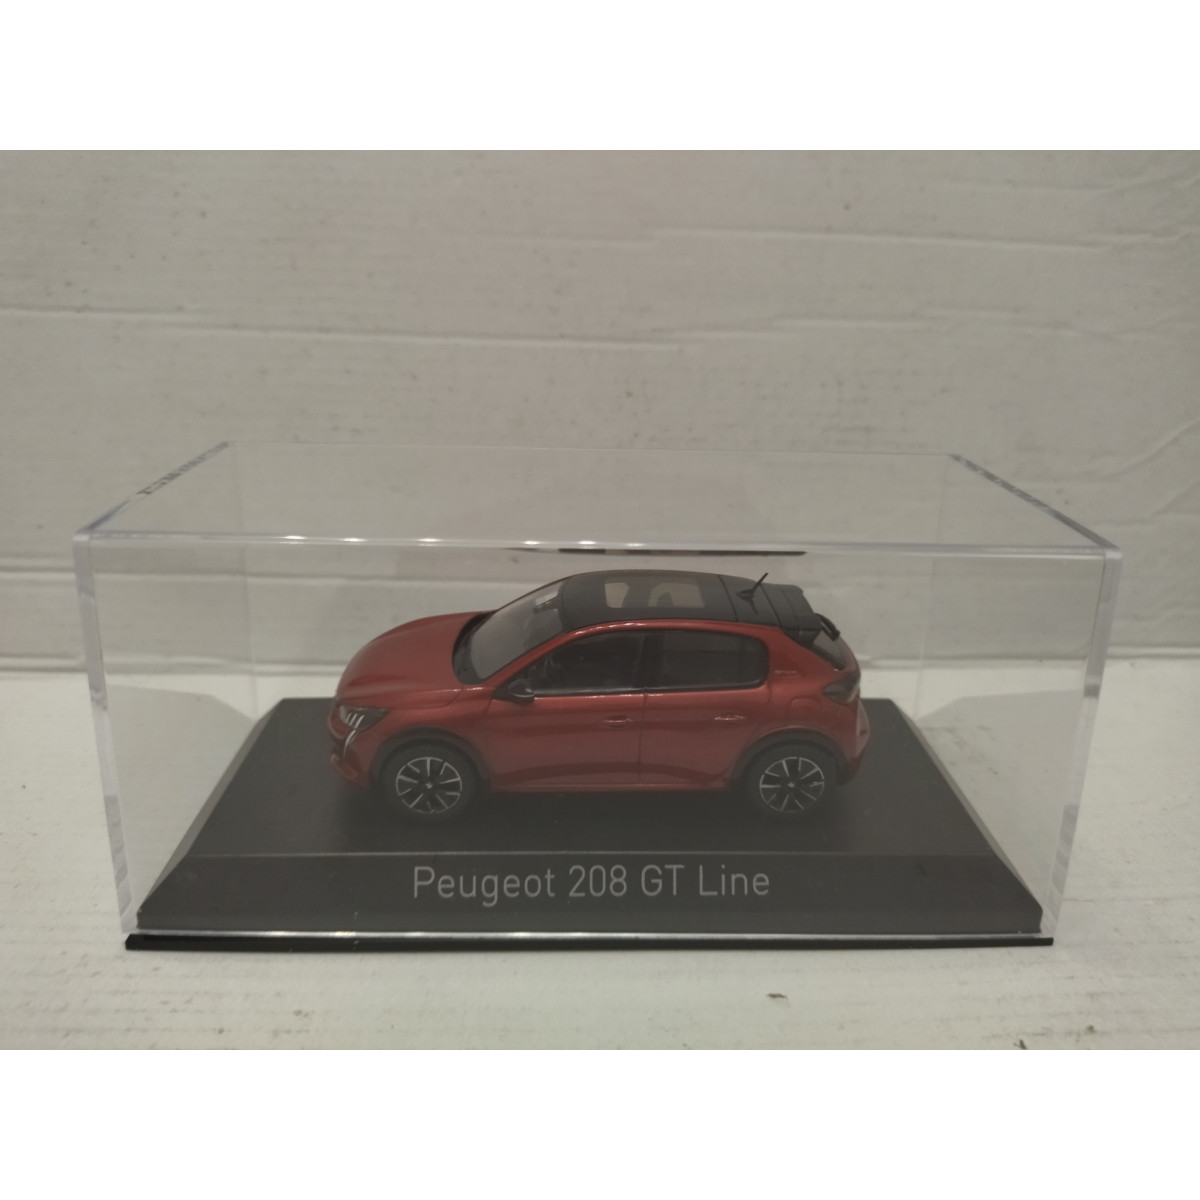 Peugeot 208 GT Line 2019 - Red